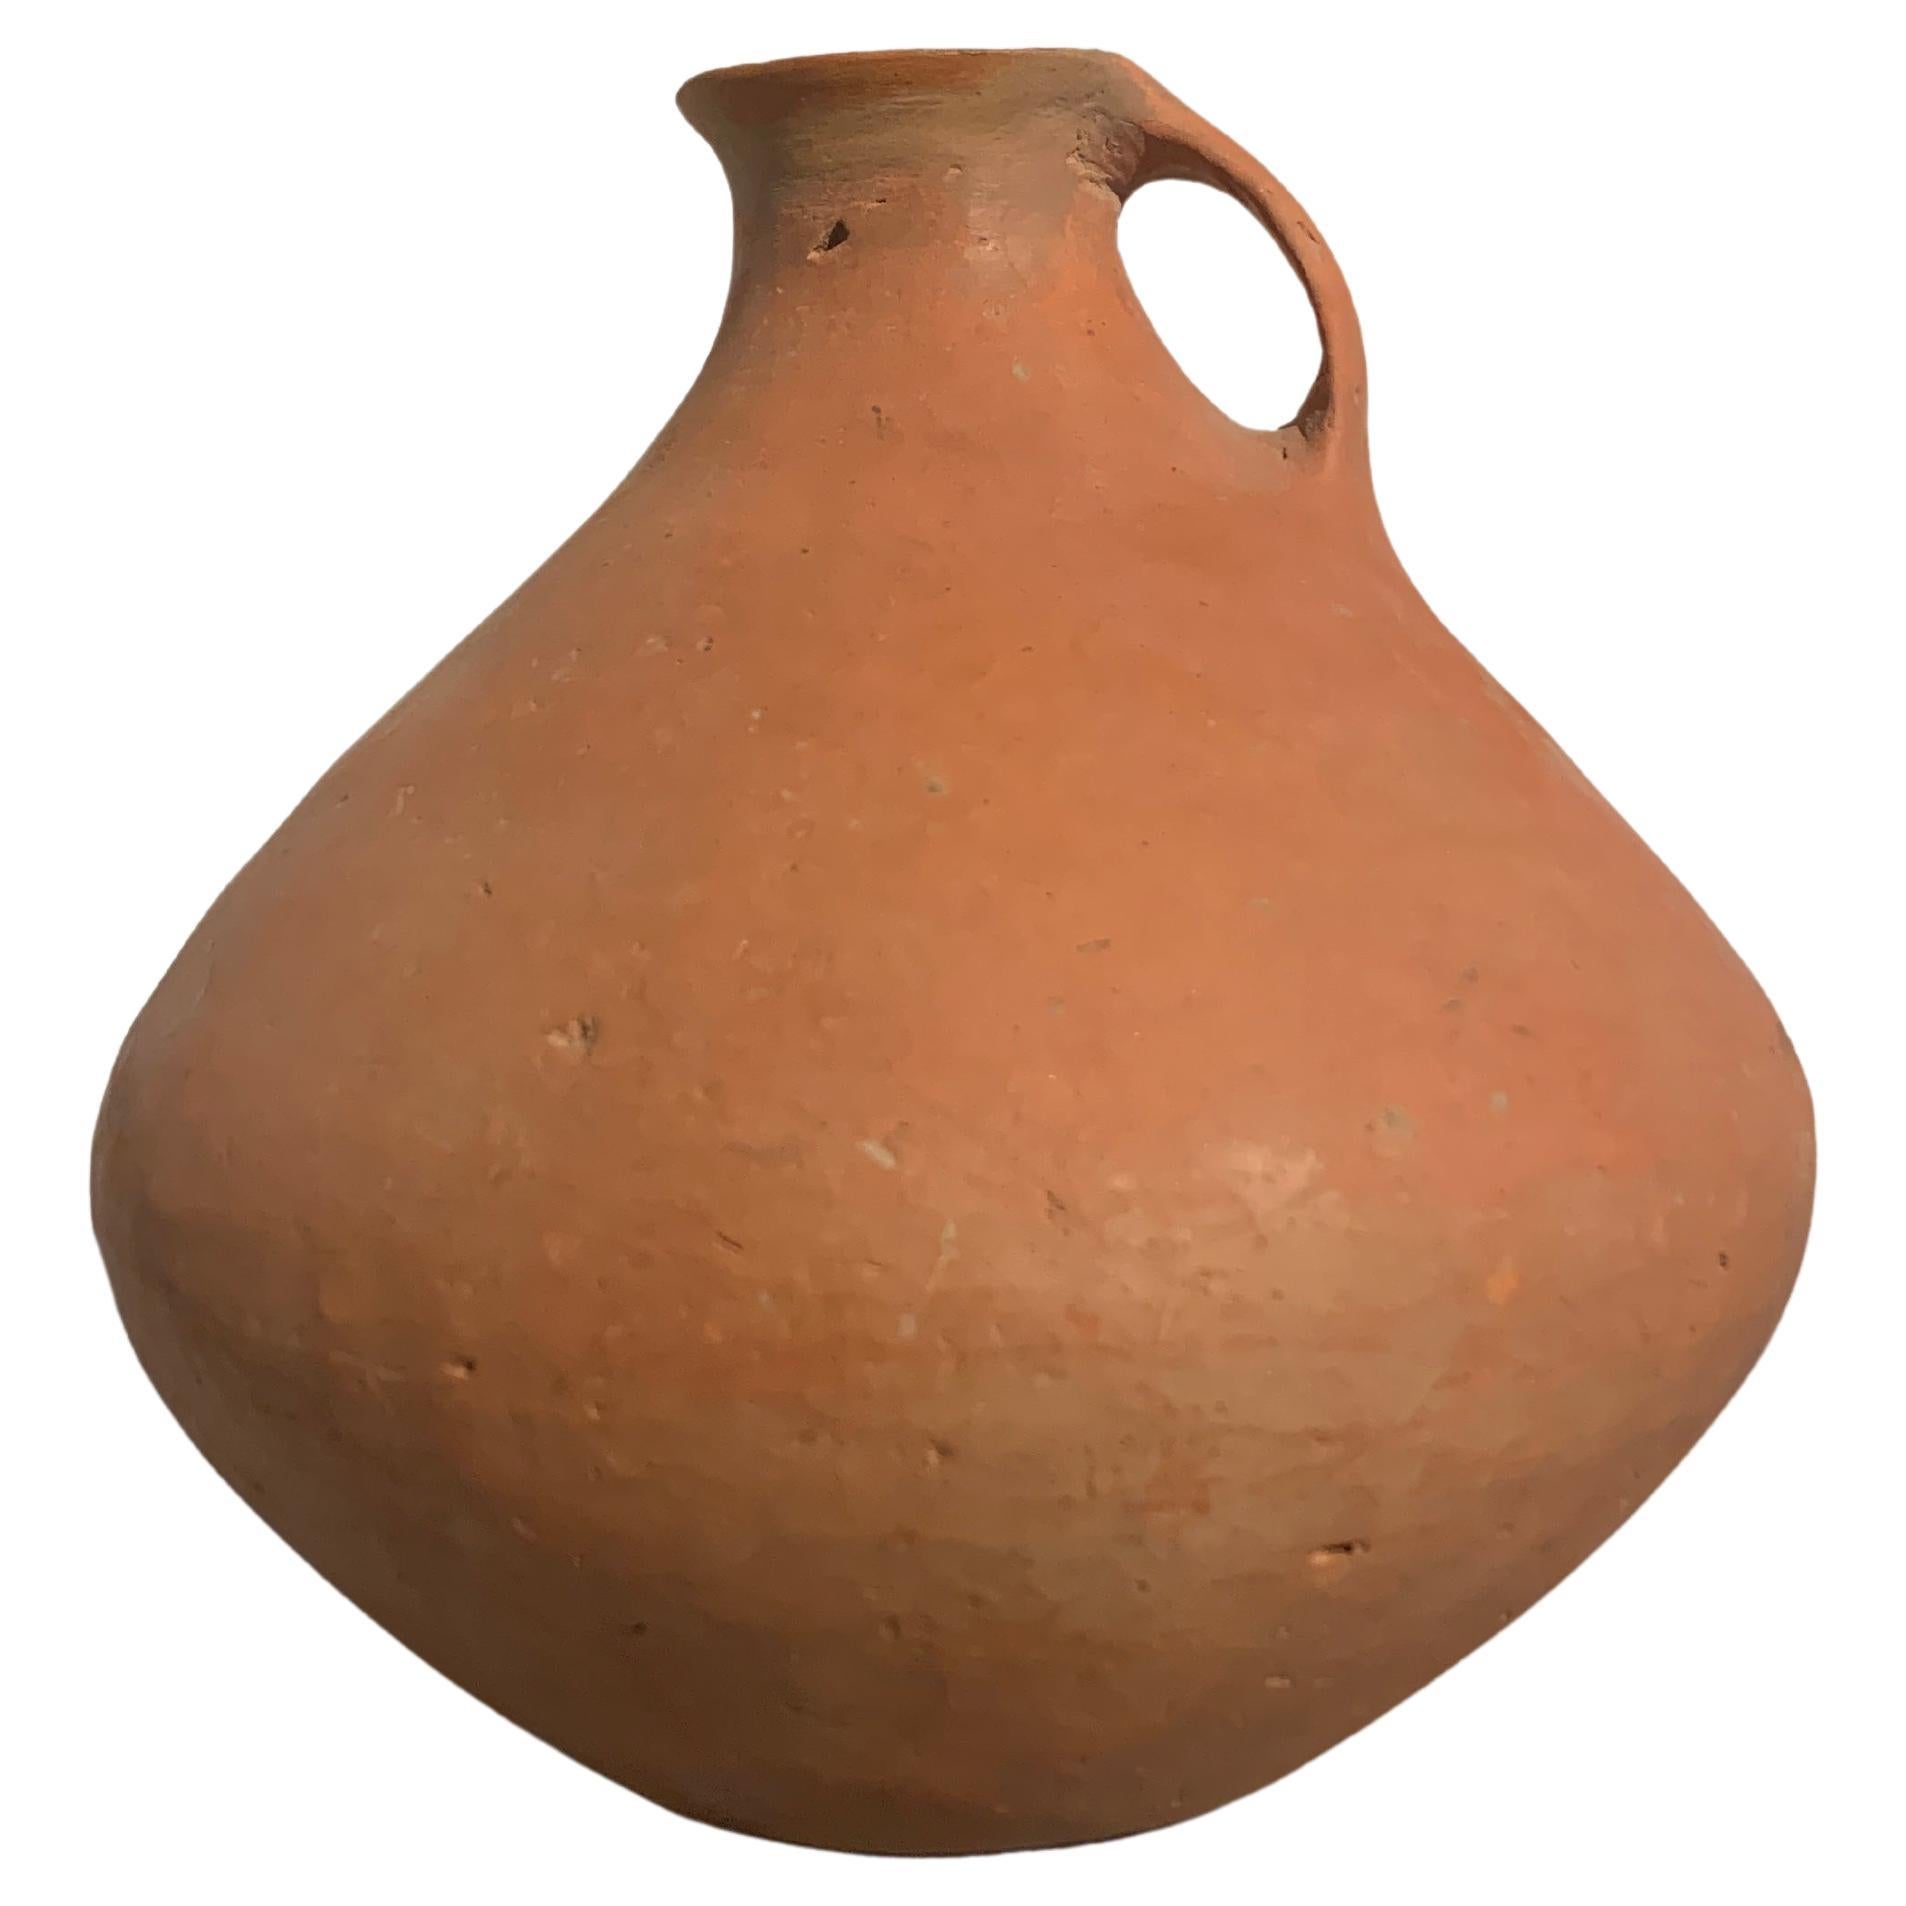 Vase en poterie rouge de la culture néolithique chinoise Qijia, 2200 avant J.-C. - 1600 après J.-C., Chine